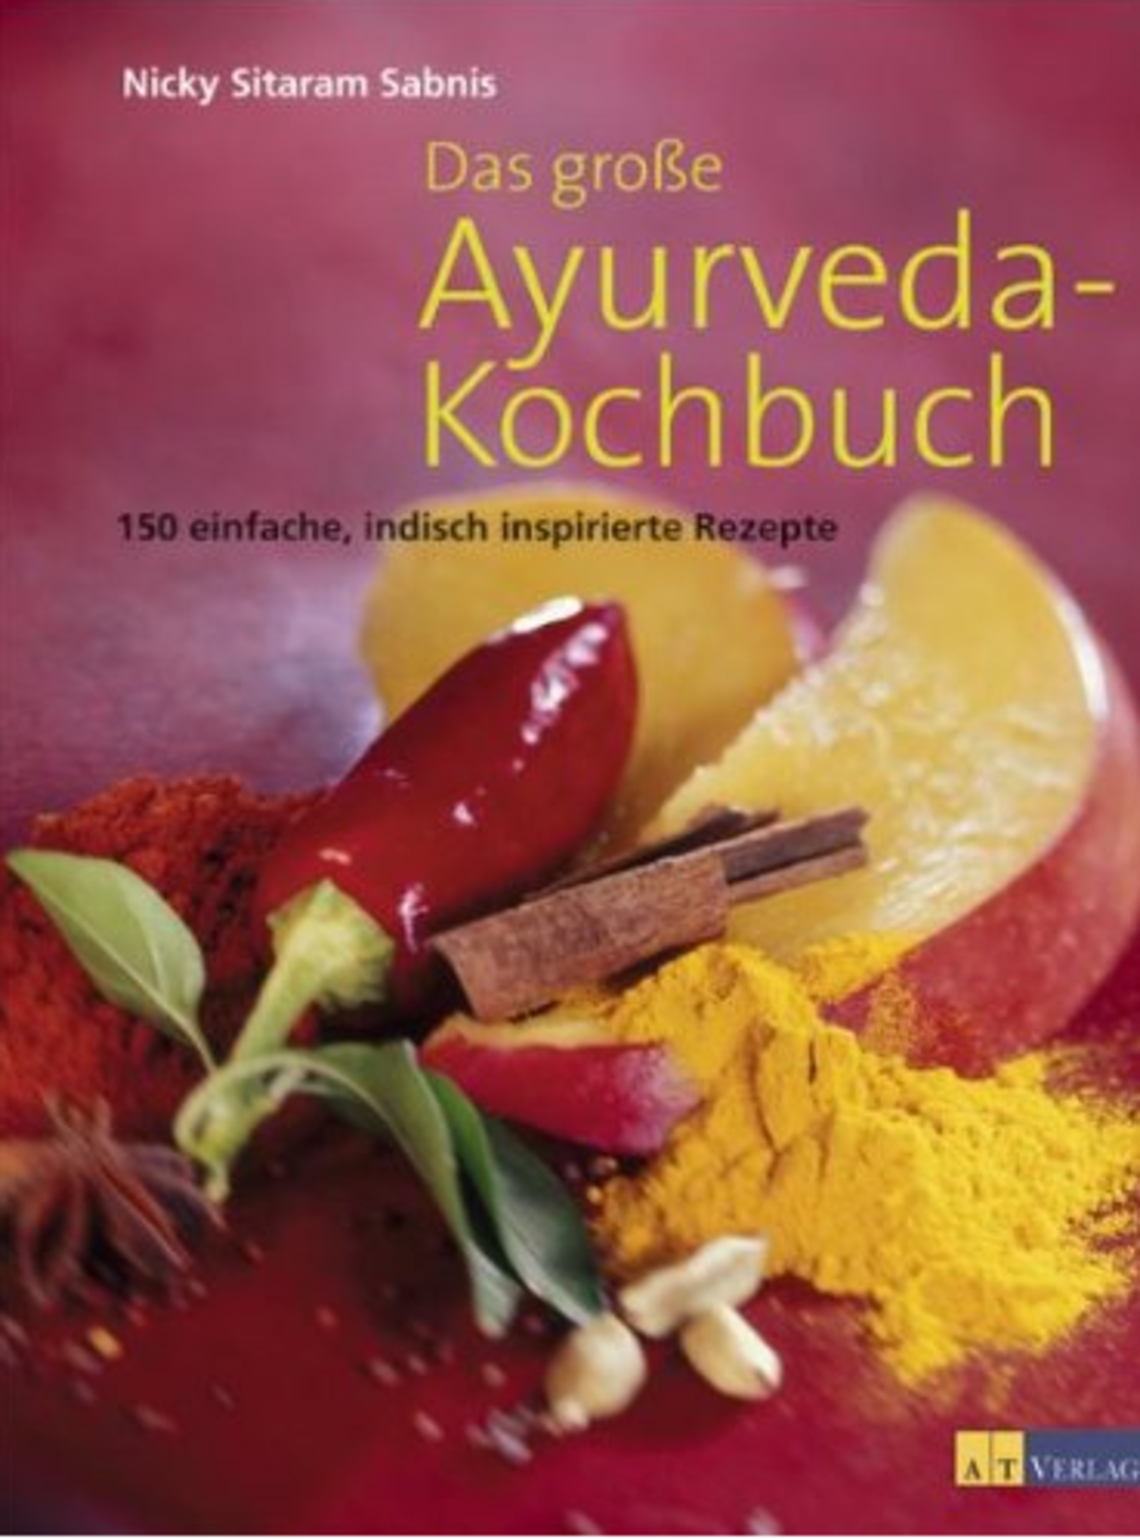 Das große Ayurveda-Kochbuch von Nicky Sitaram Sabnis